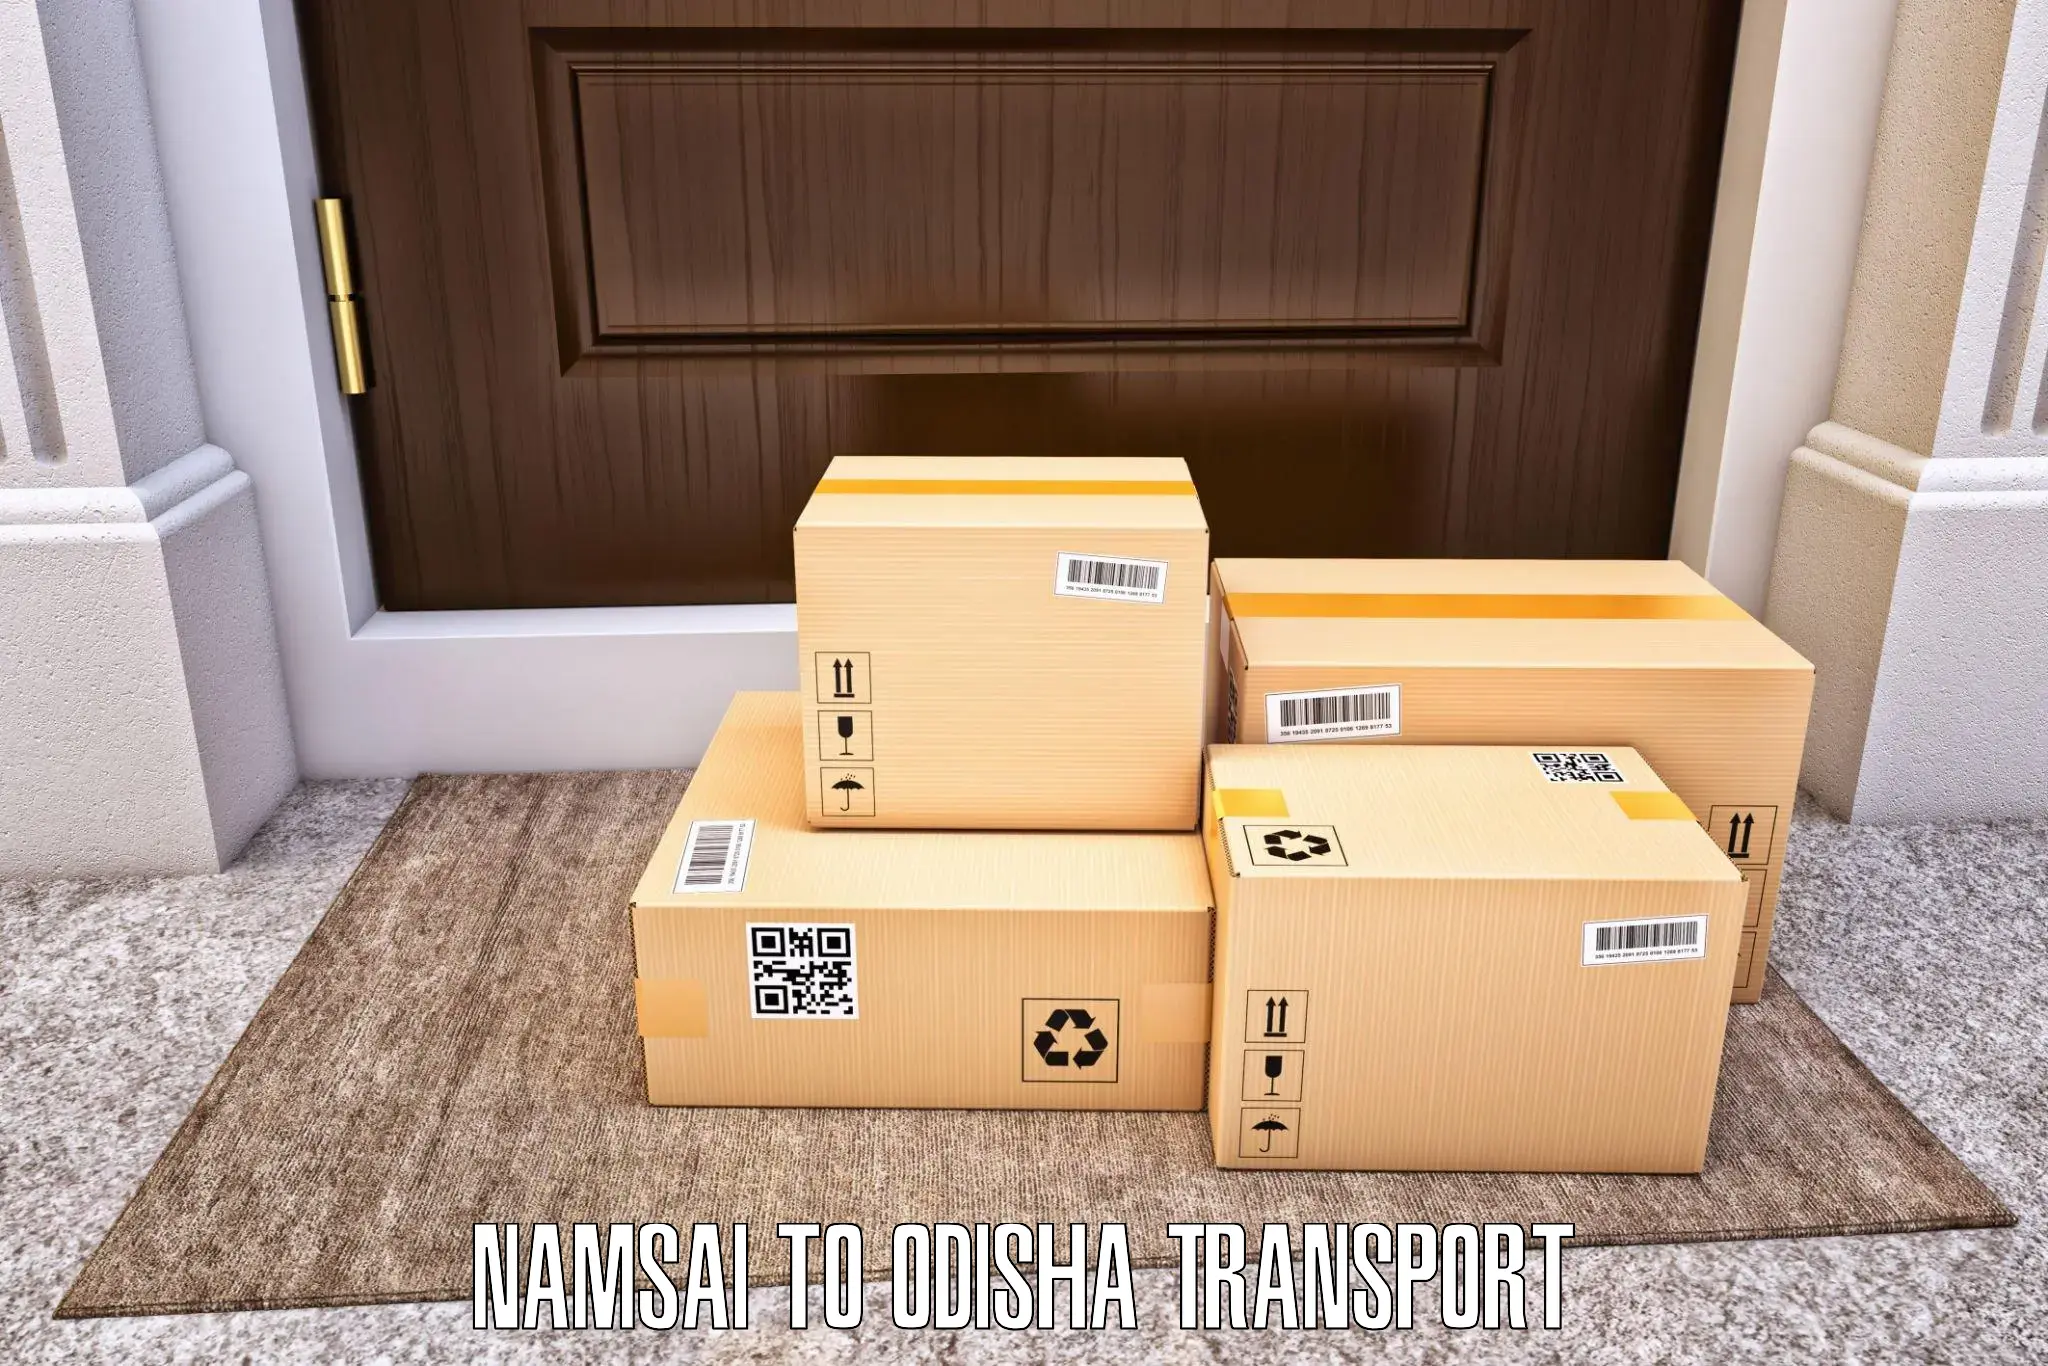 Logistics transportation services Namsai to Kadobahal